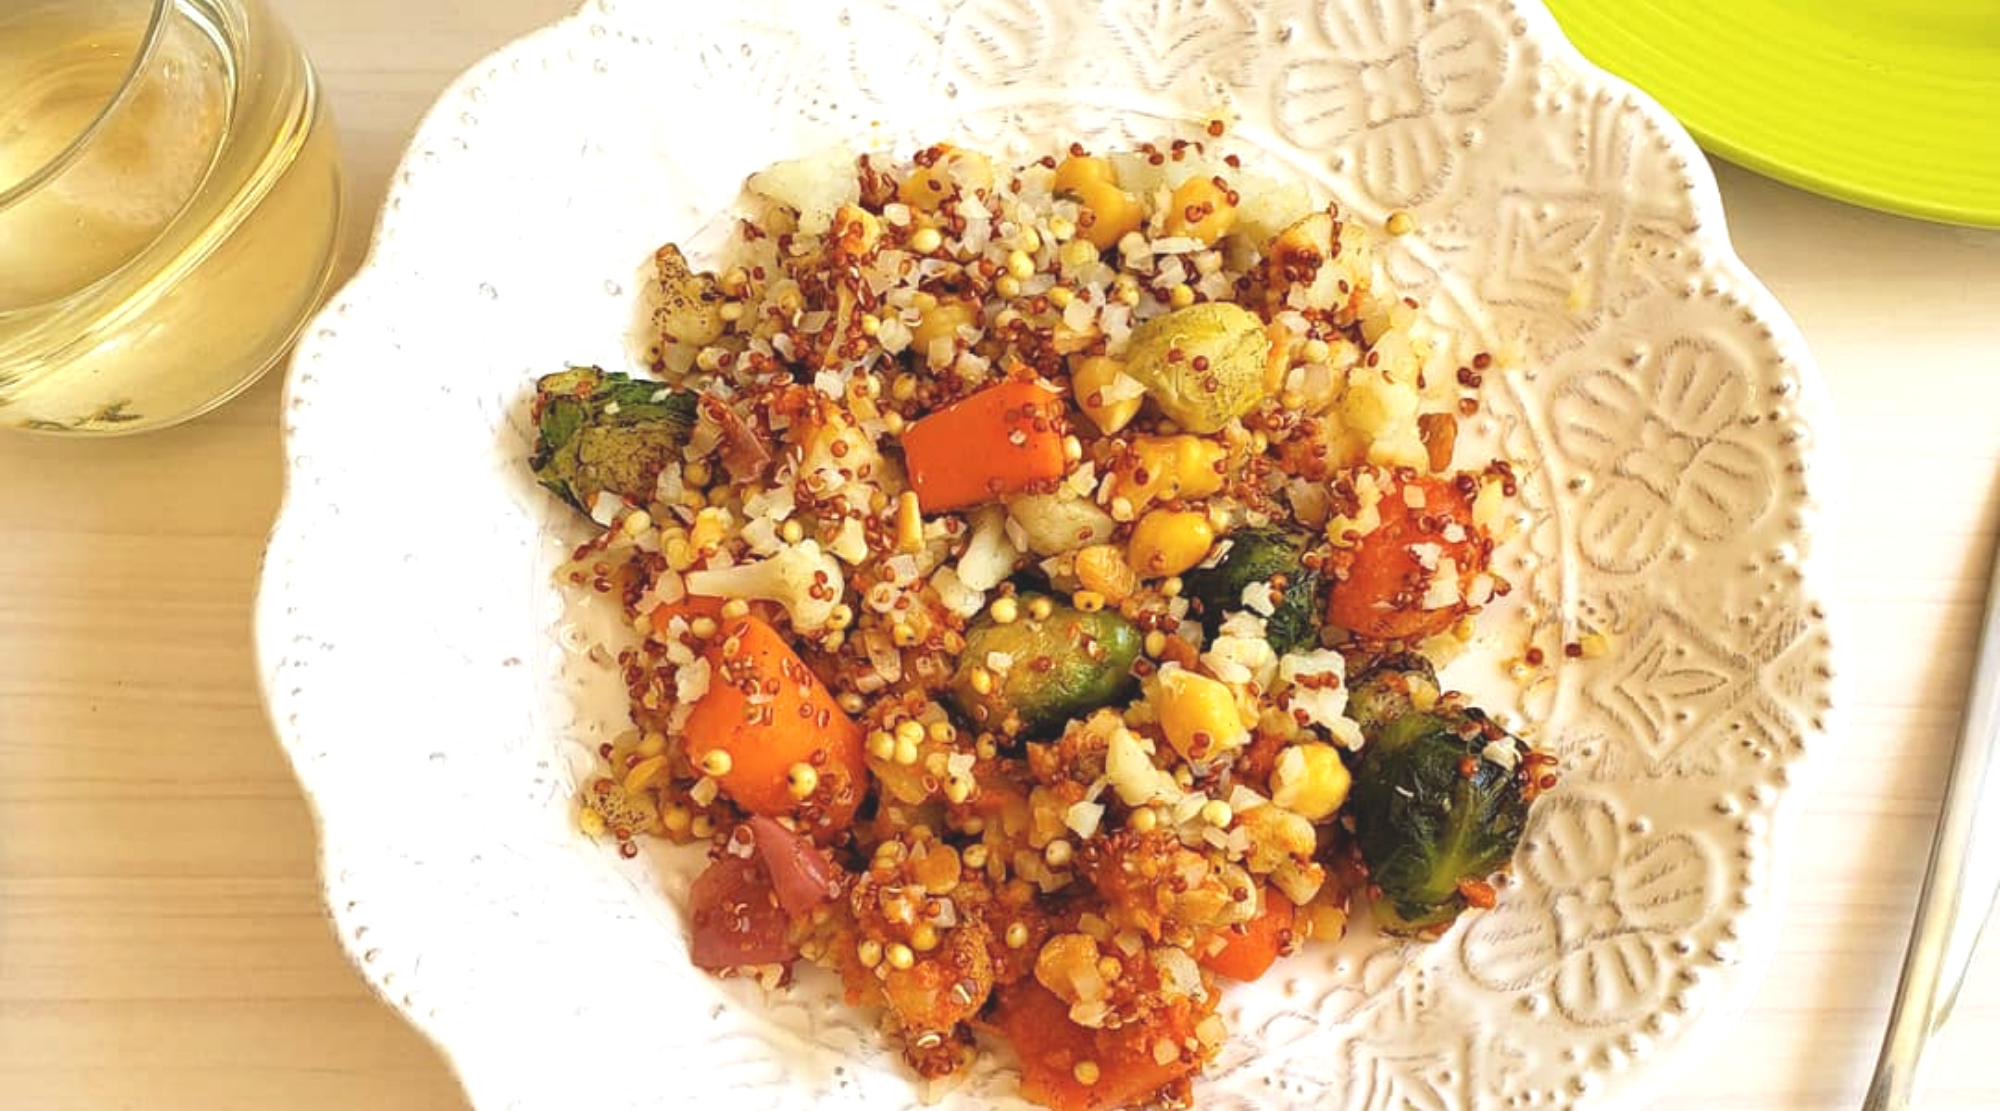 Wildscape quinoa meal